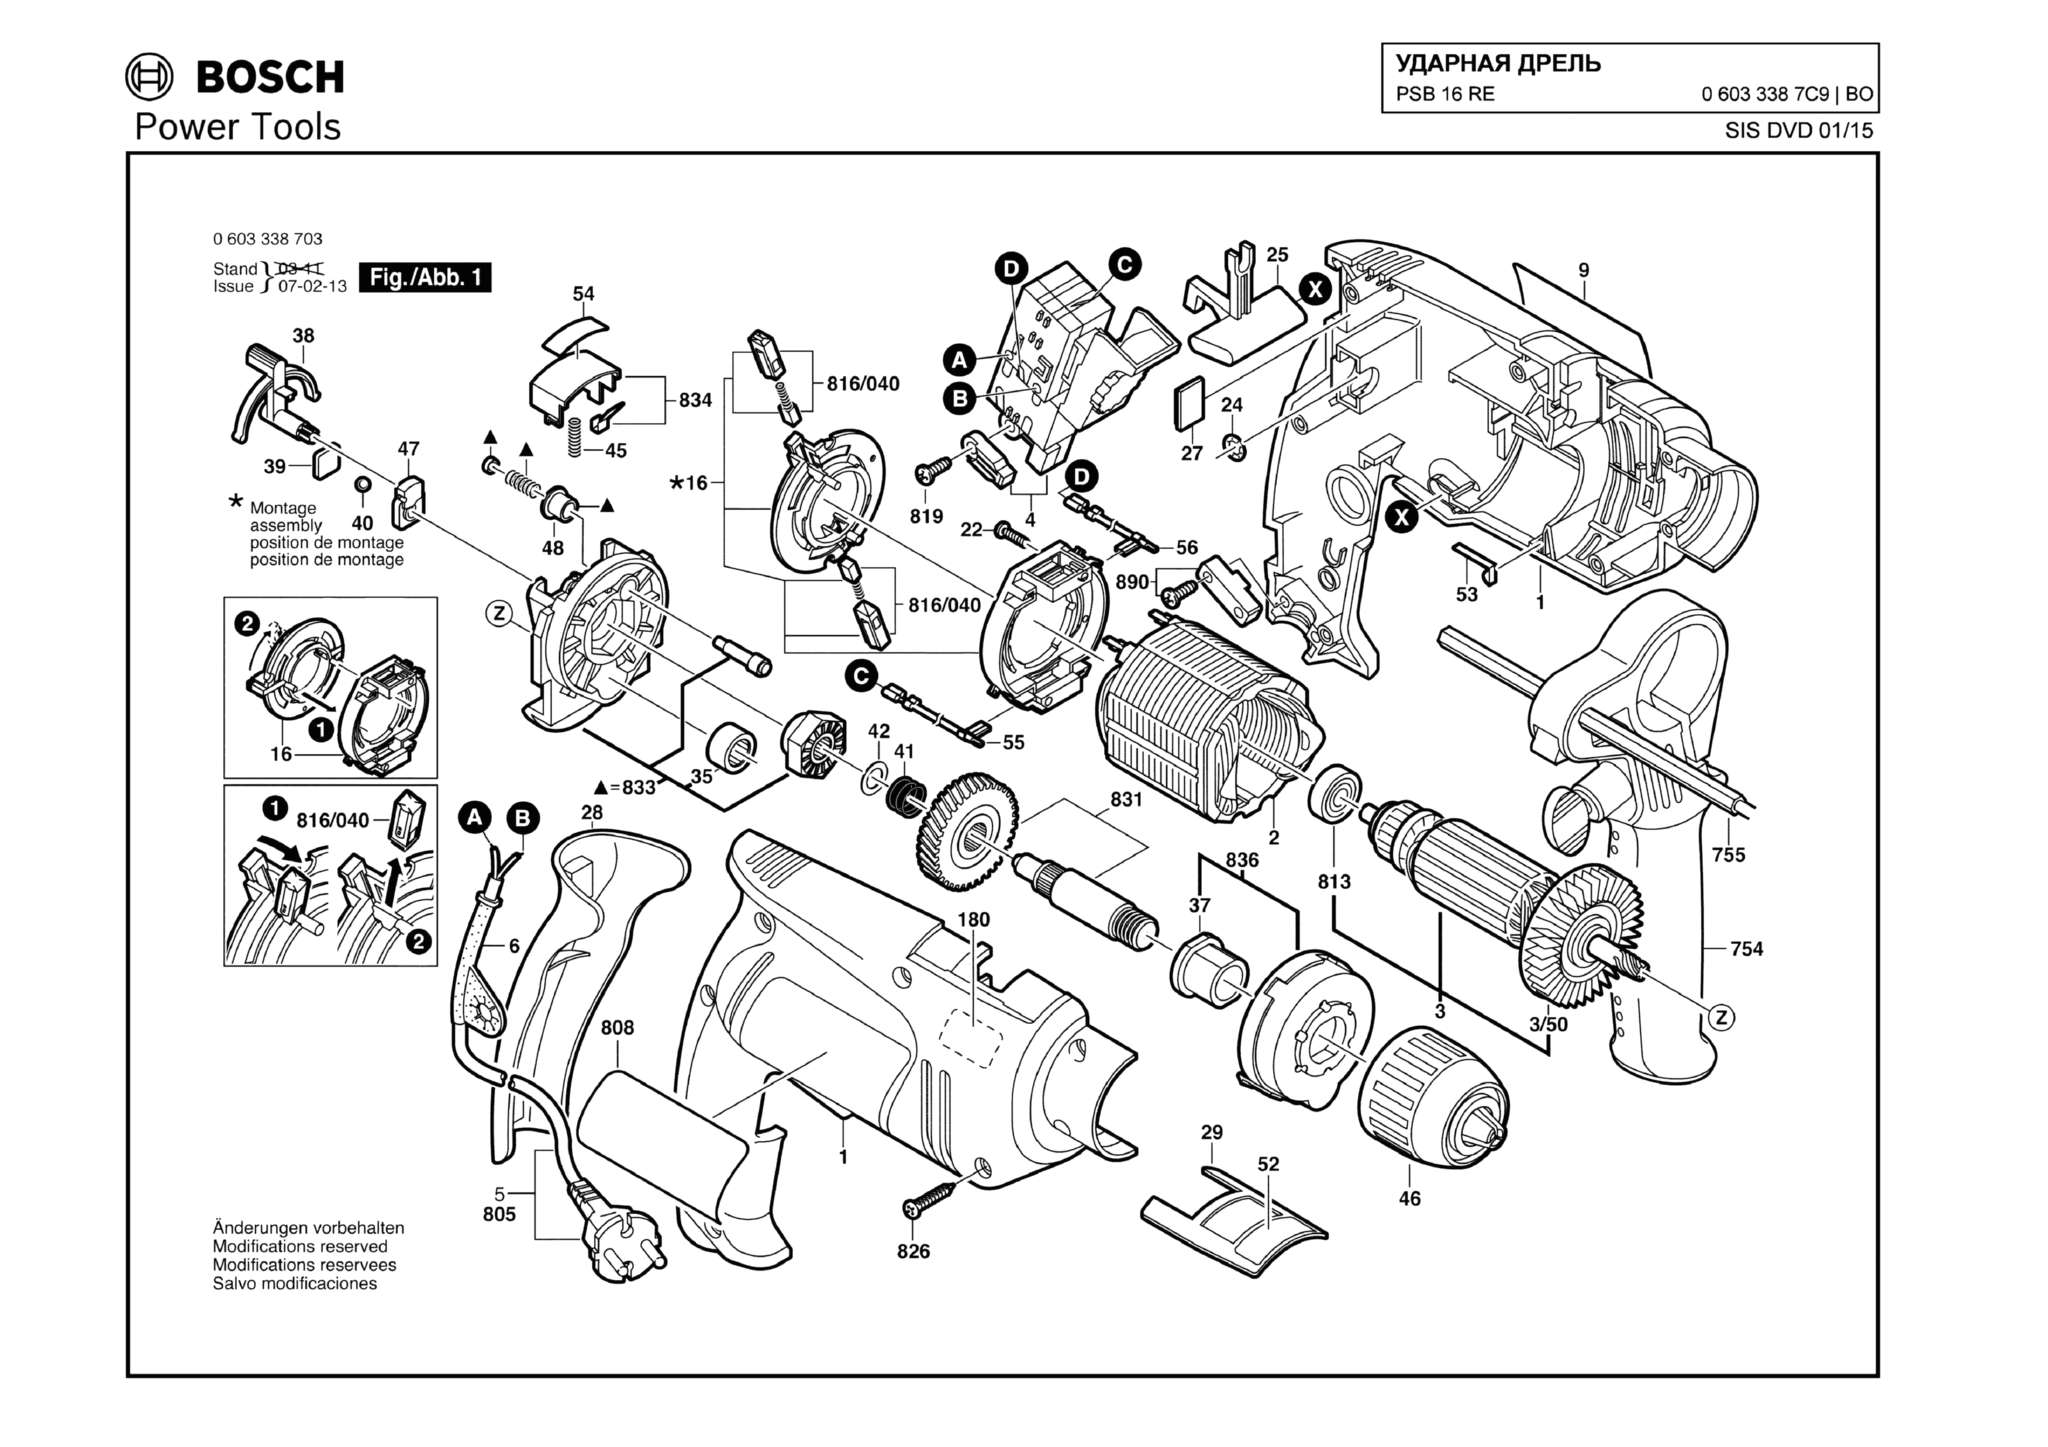 Запчасти, схема и деталировка Bosch PSB 16 RE (ТИП 06033387C9)